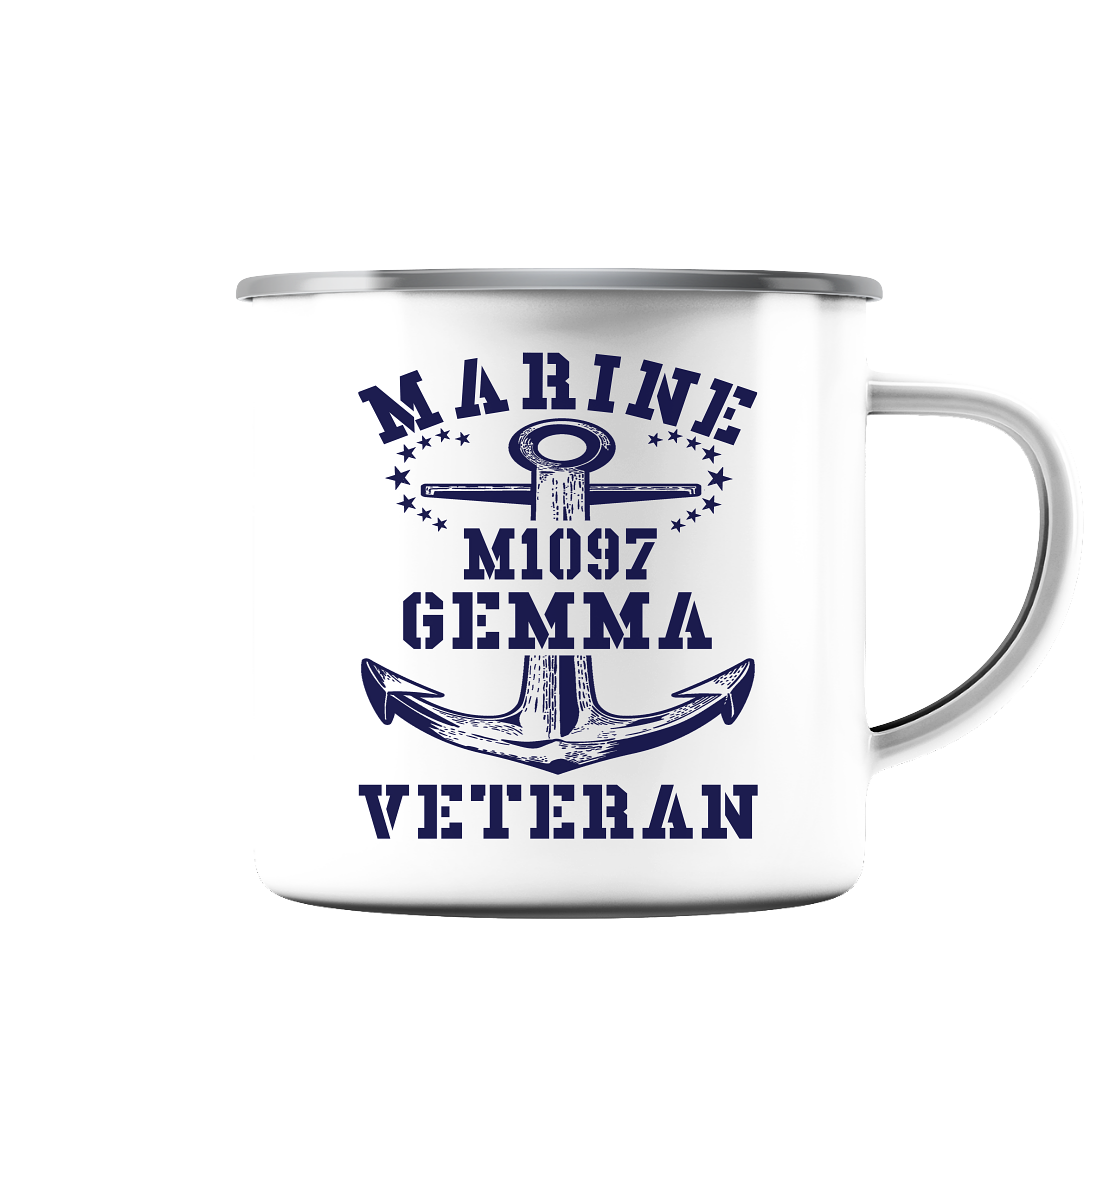 SM-Boot M1097 GEMMA Marine Veteran - Emaille Tasse (Silber)